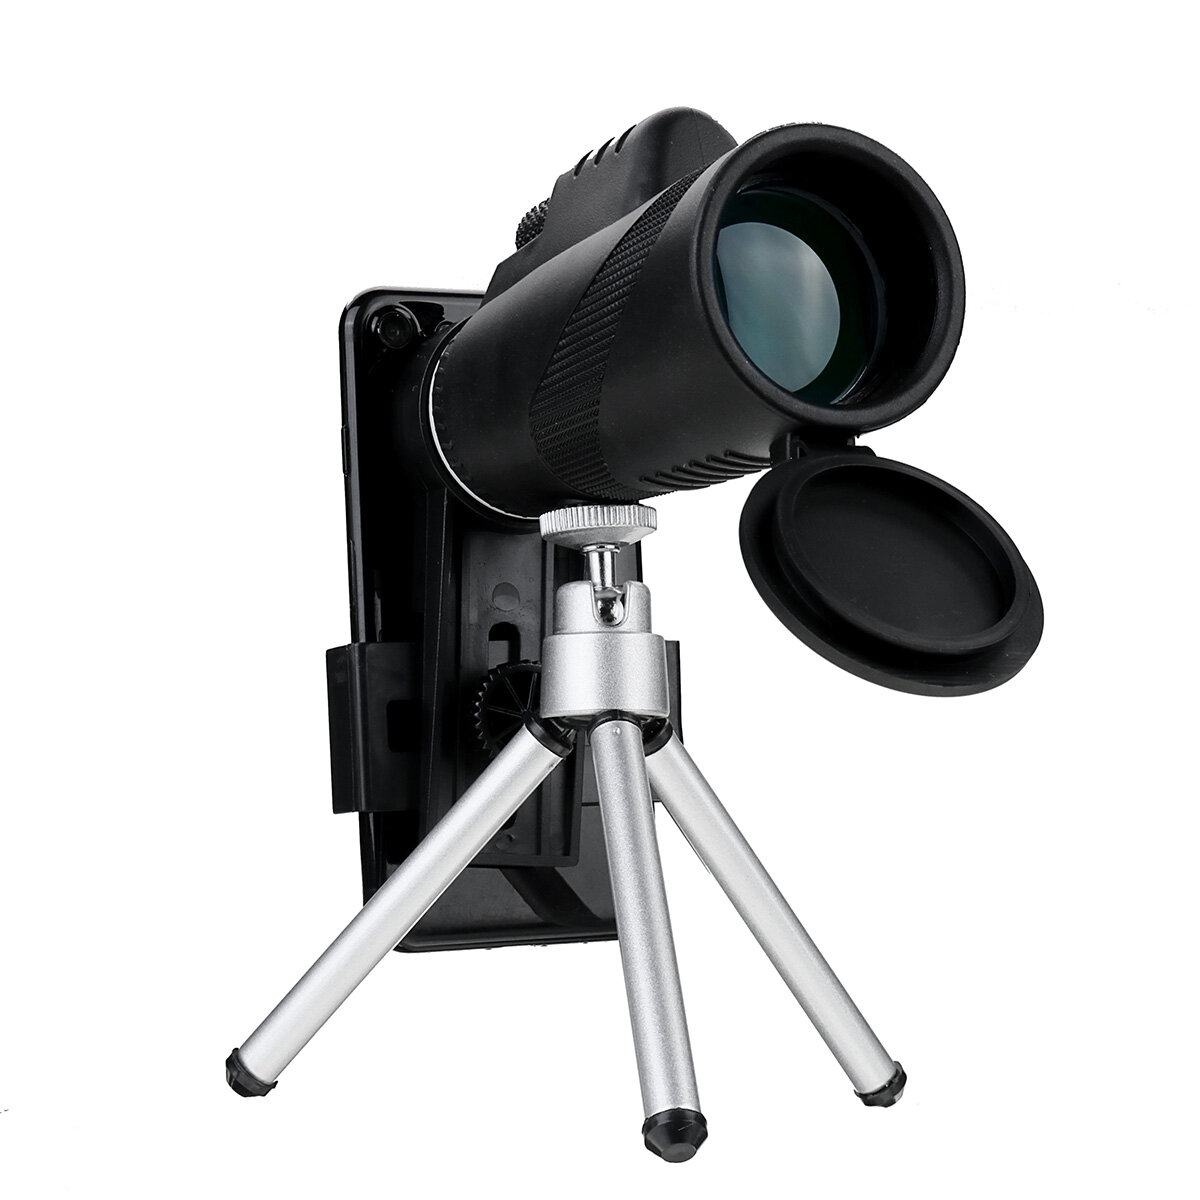 مجموعة تلسكوب الهاتف 80X للكبار HD وحيد العين مع حامل ثلاثي + محول هاتف للسفر ومراقبة الطيور والتخييم والسفر.